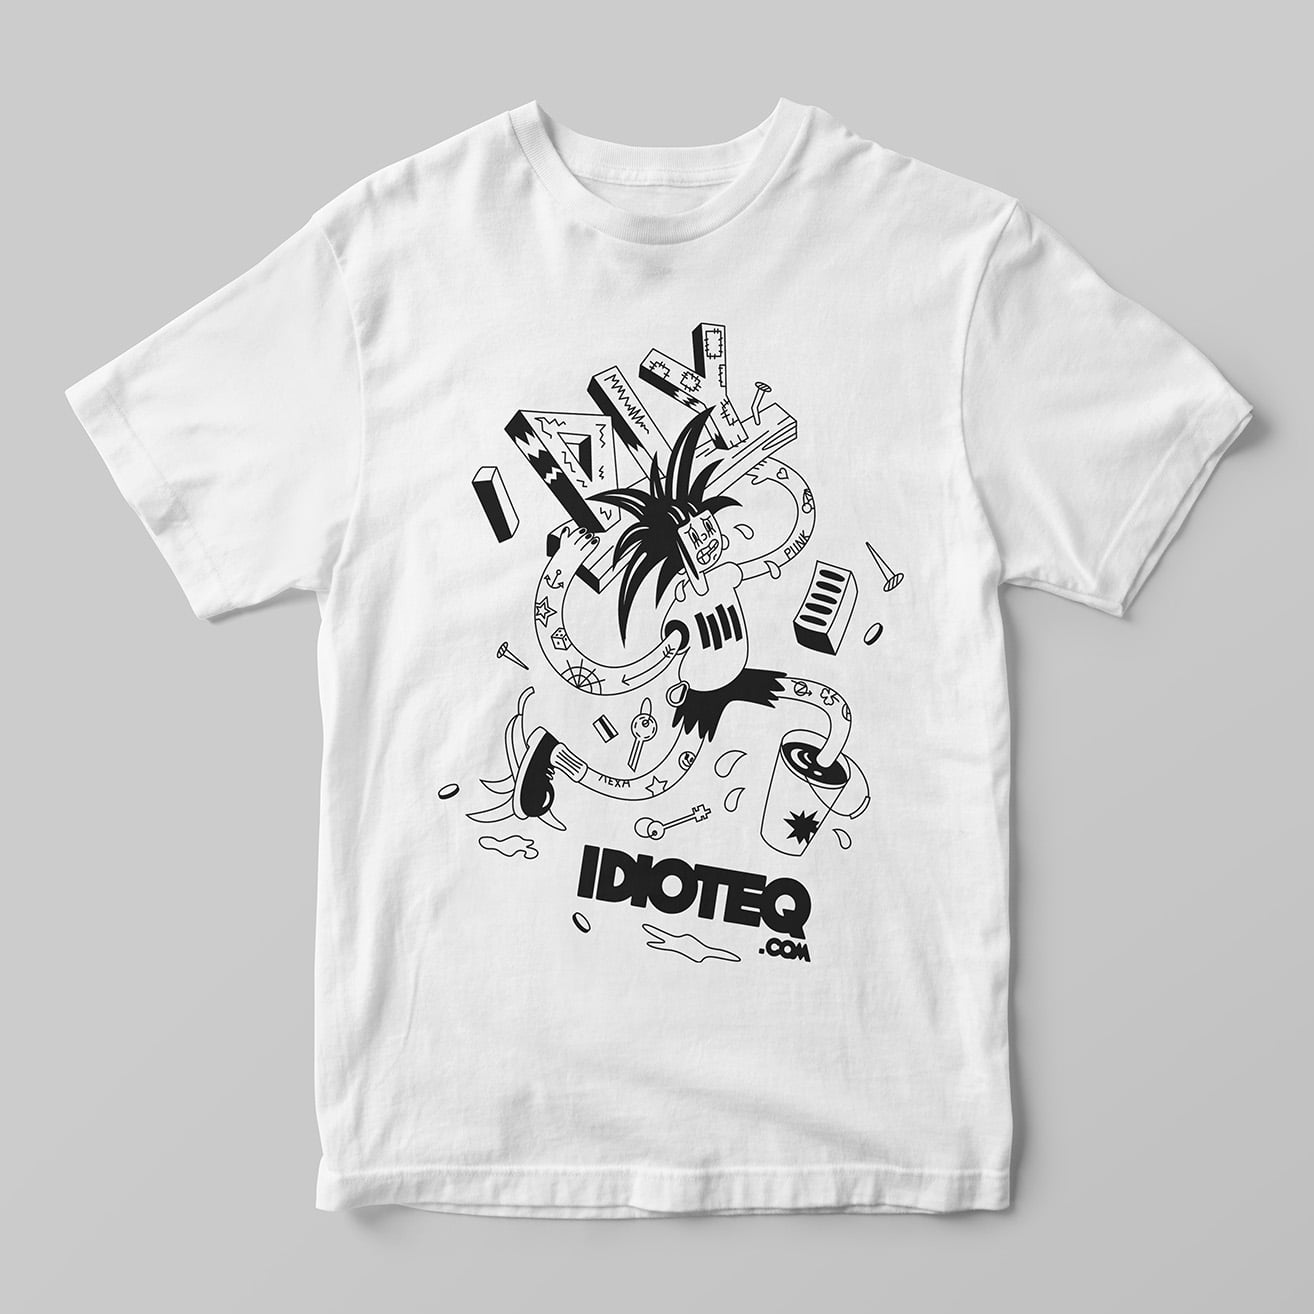 IDIOTEQ.com t shirts 1 min